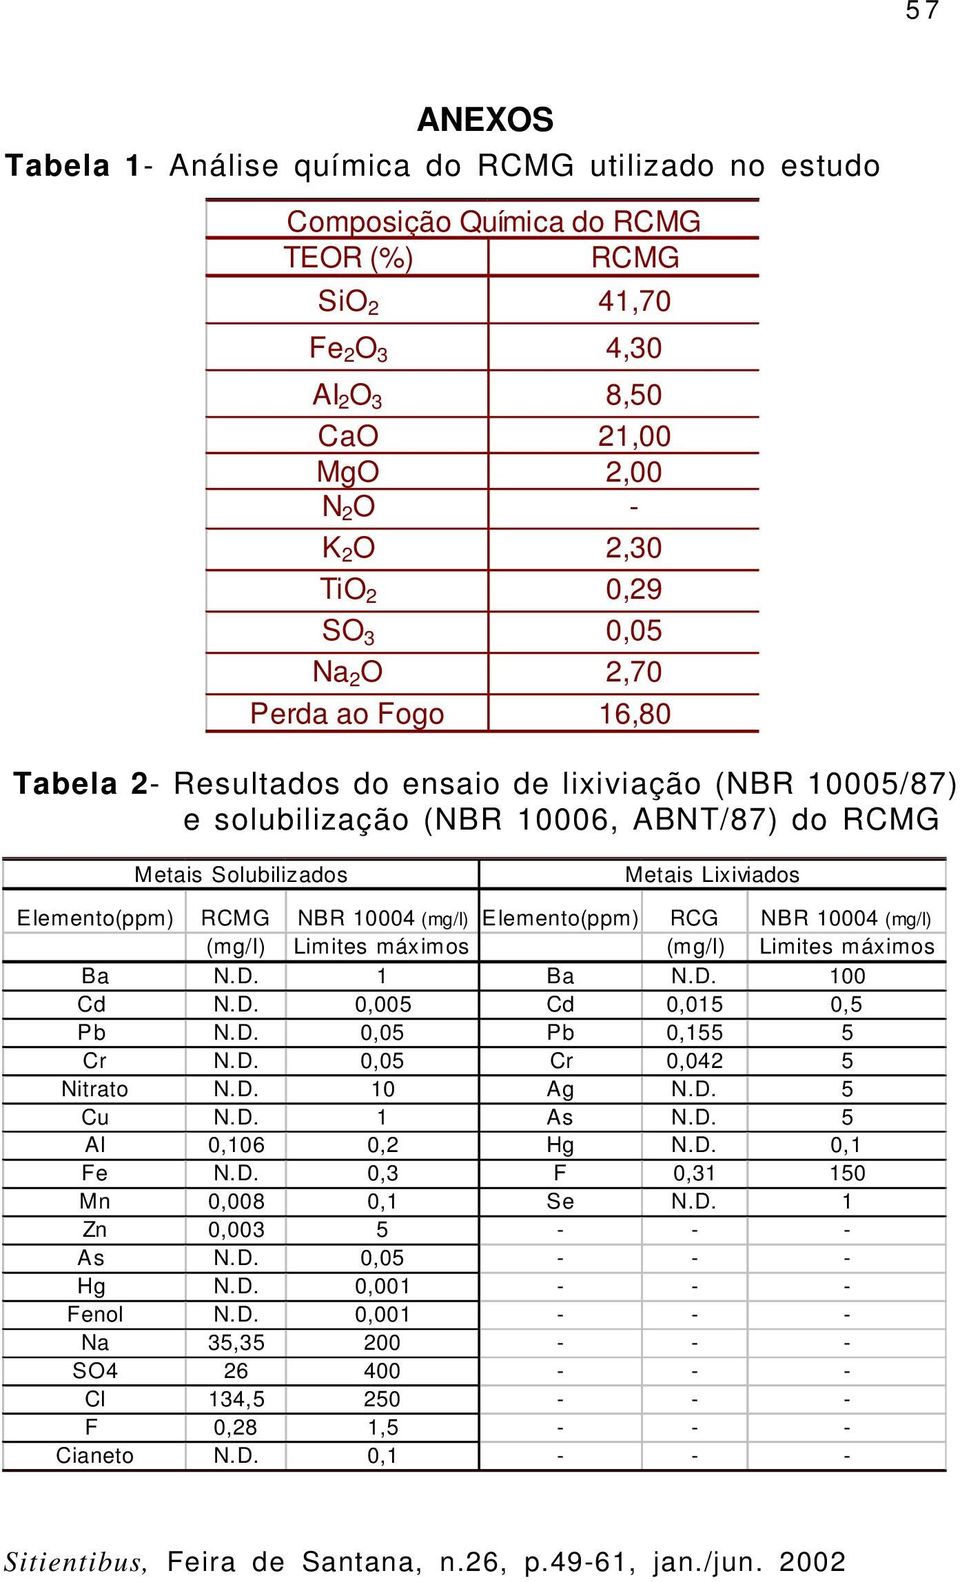 NBR 10004 (mg/l) Elemento(ppm) RCG NBR 10004 (mg/l) (mg/l) Limites máximos (mg/l) Limites máximos Ba N.D. 1 Ba N.D. 100 Cd N.D. 0,005 Cd 0,015 0,5 Pb N.D. 0,05 Pb 0,155 5 Cr N.D. 0,05 Cr 0,042 5 Nitrato N.